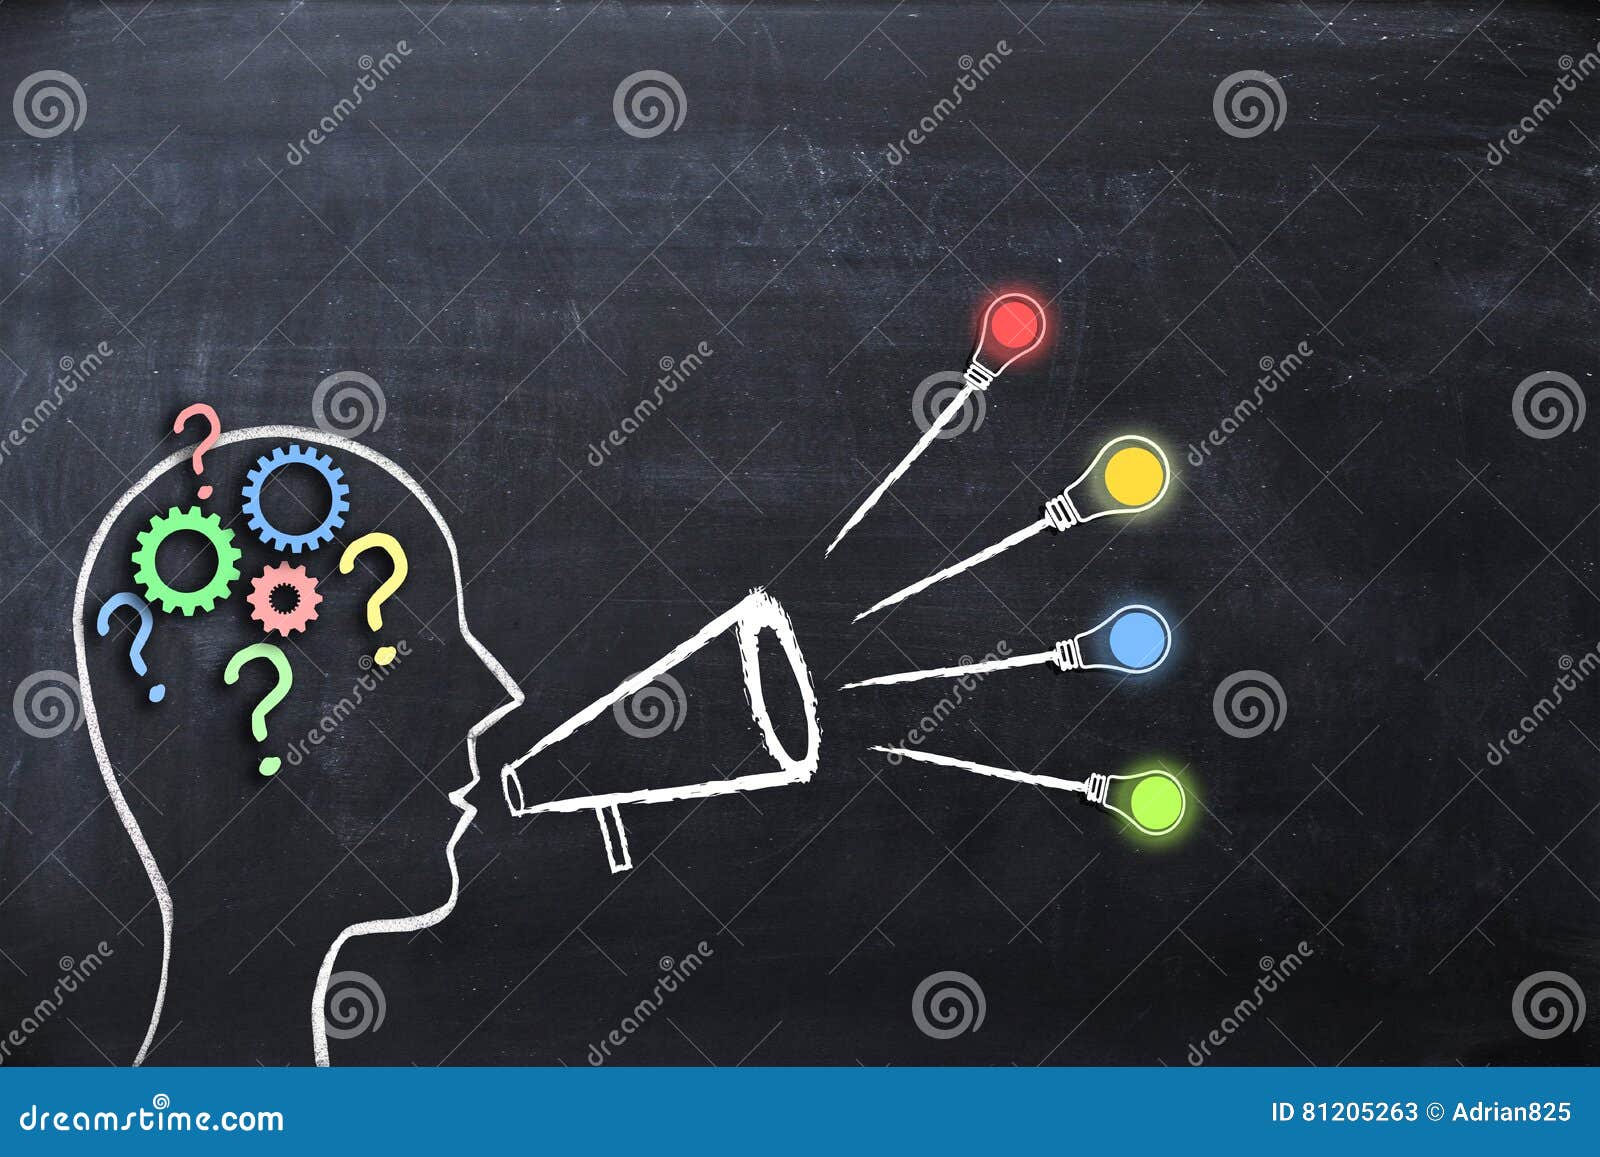 coaching concept Ã¢â¬â knowledge and ideas sharing with human head  and megaphone or bullhorn on blackboard